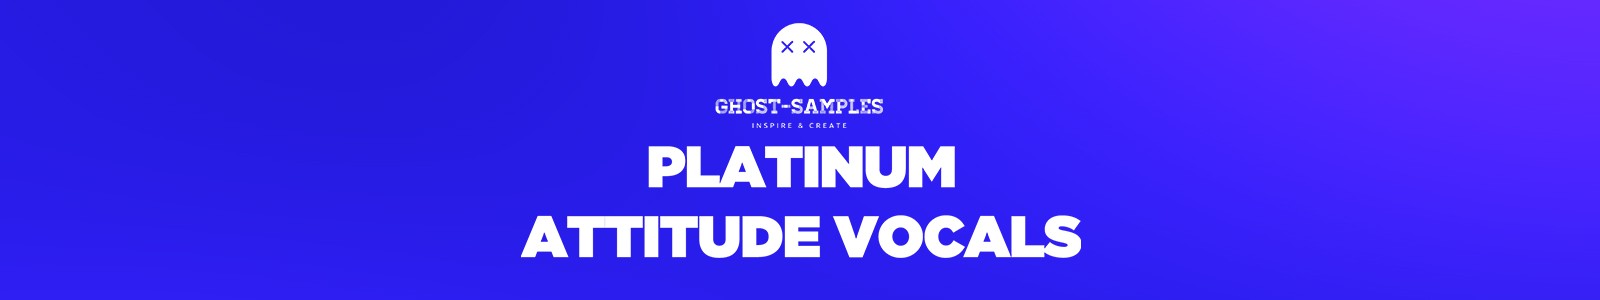 Ghost Samples Platinum: Attitude Vocals